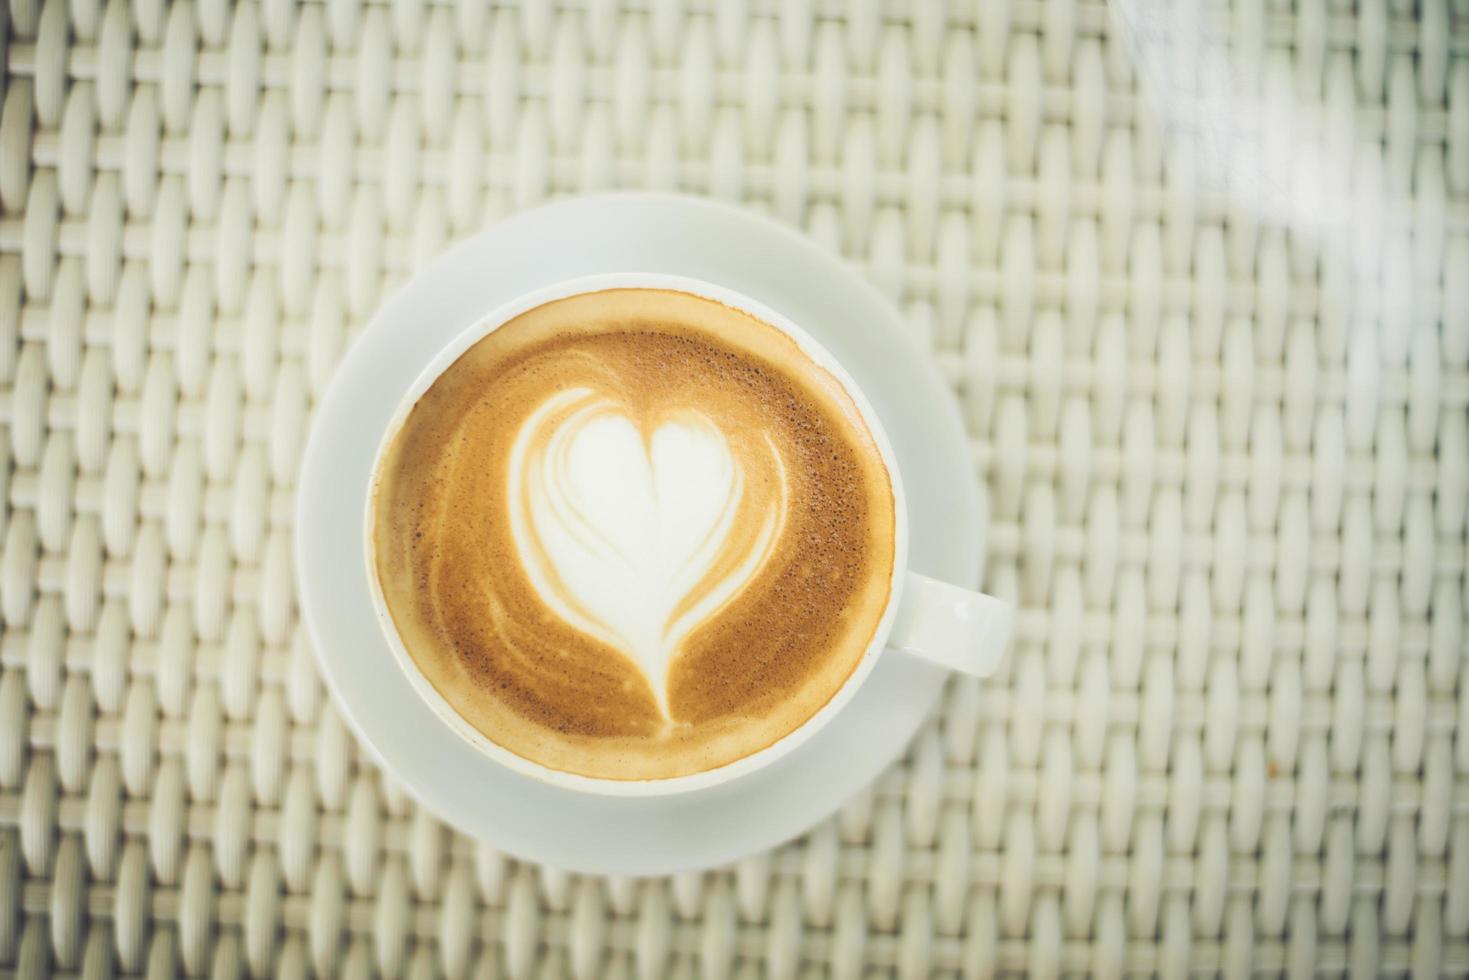 latte art kaffe med hjärtformat mjölkskum foto